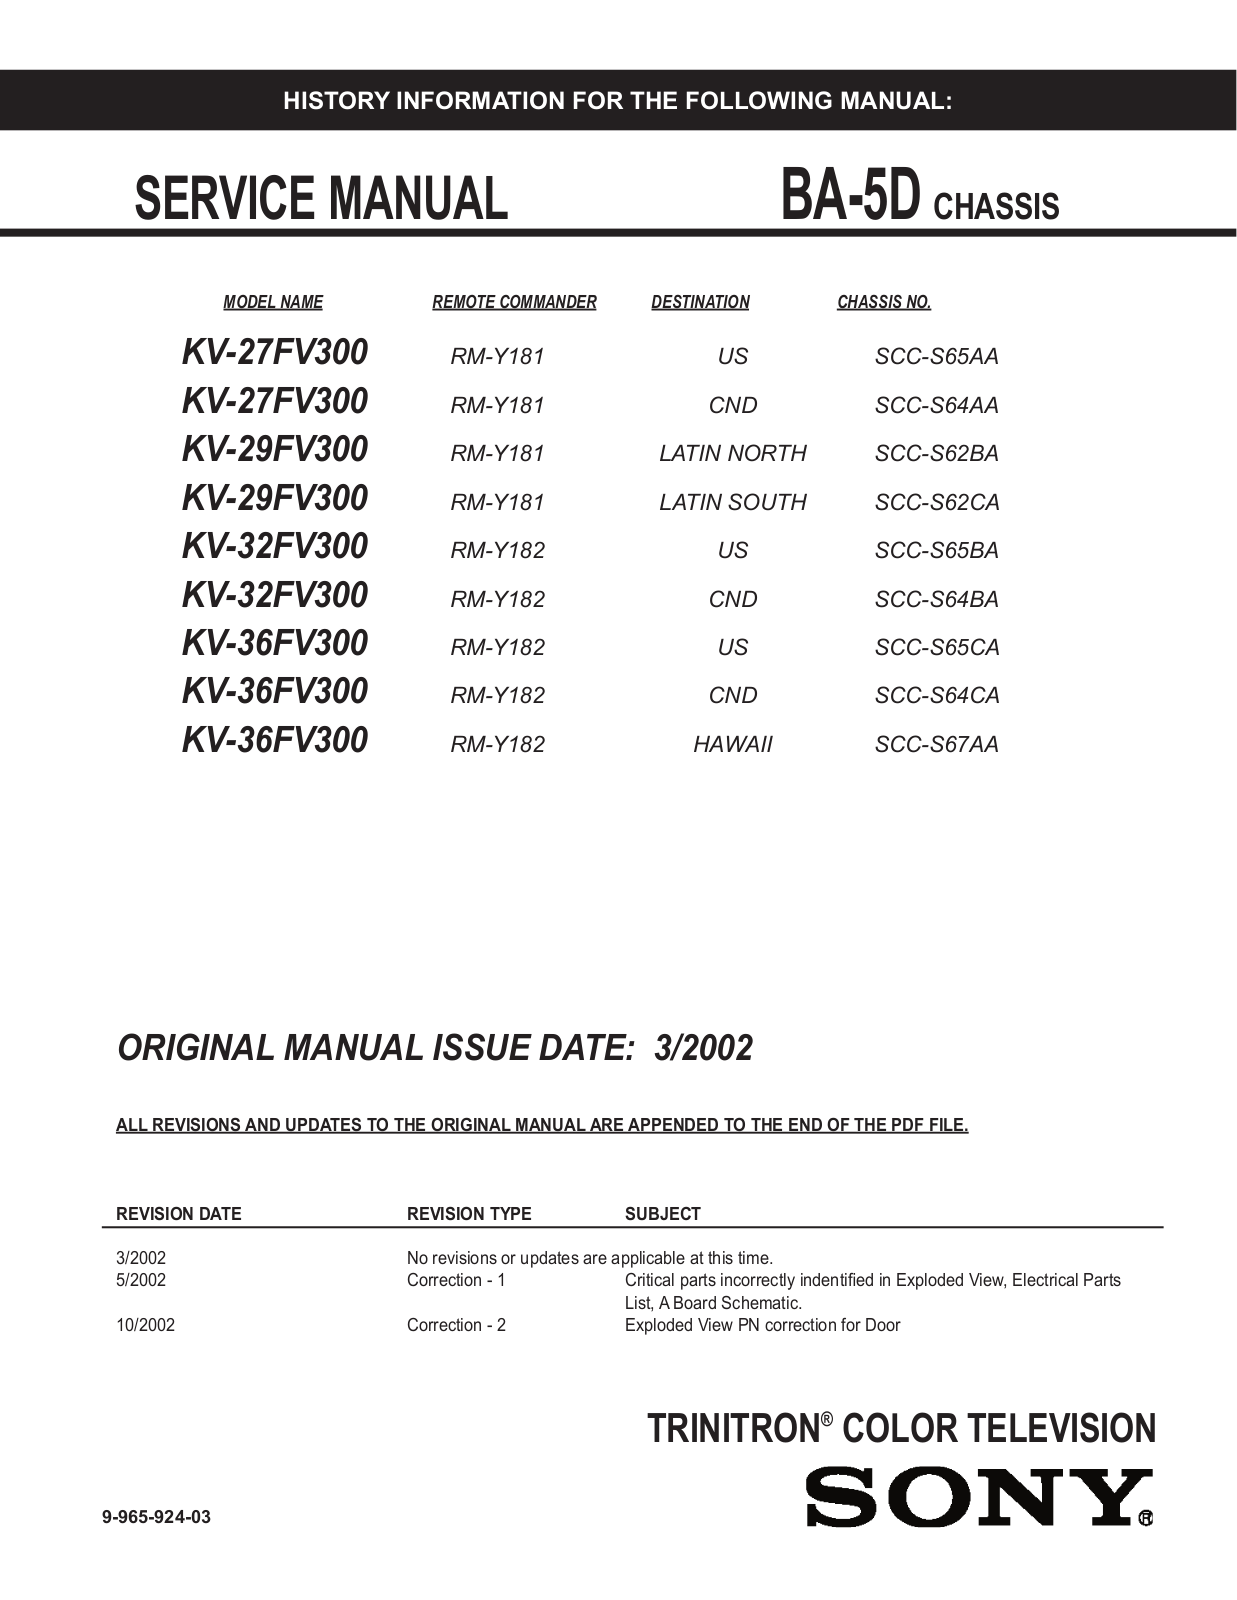 SONY 36FV300, KV-29FS120, 32FV300, 29FV300 Service Manual